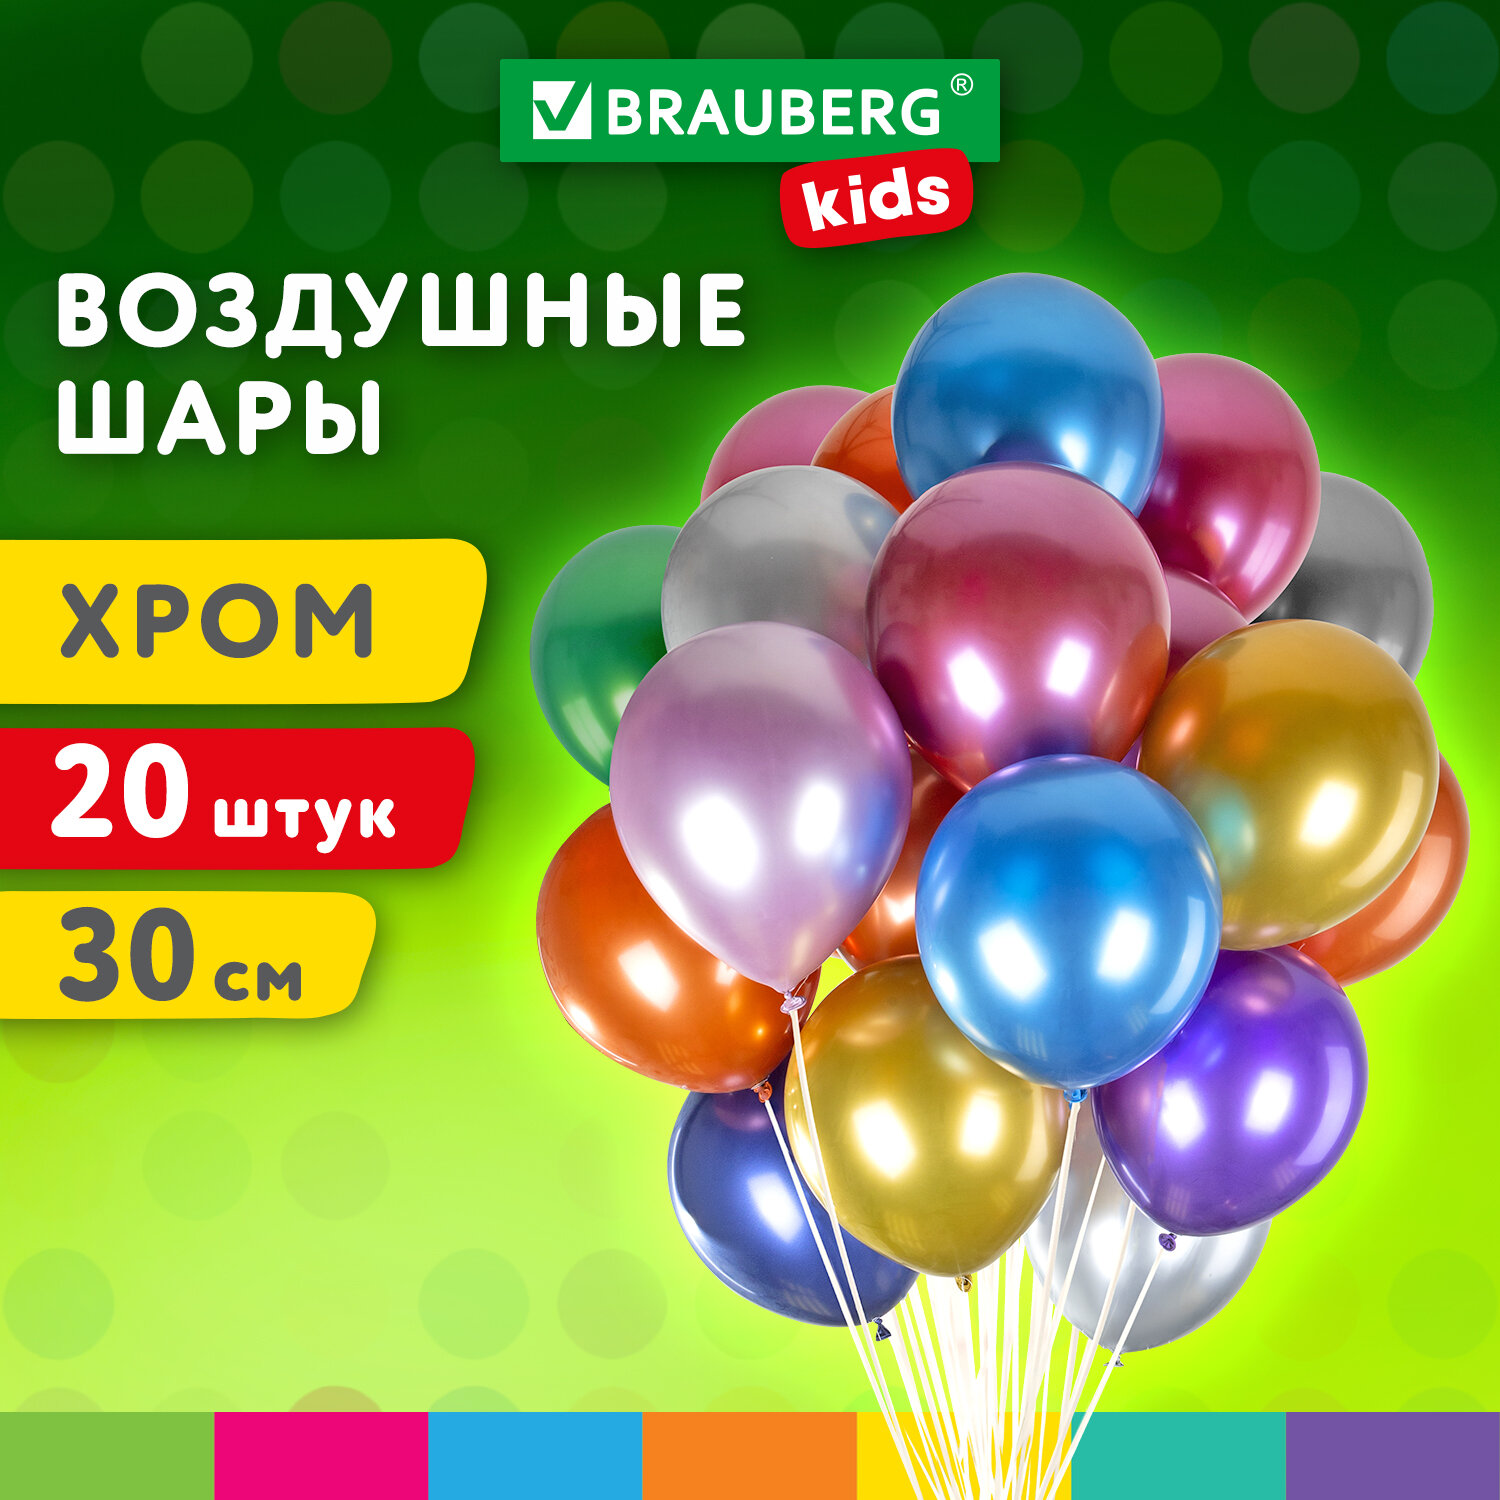 Шарики воздушные Brauberg Kids 591887 набор на день рождения, для фотозоны, 30 см, 20 штук